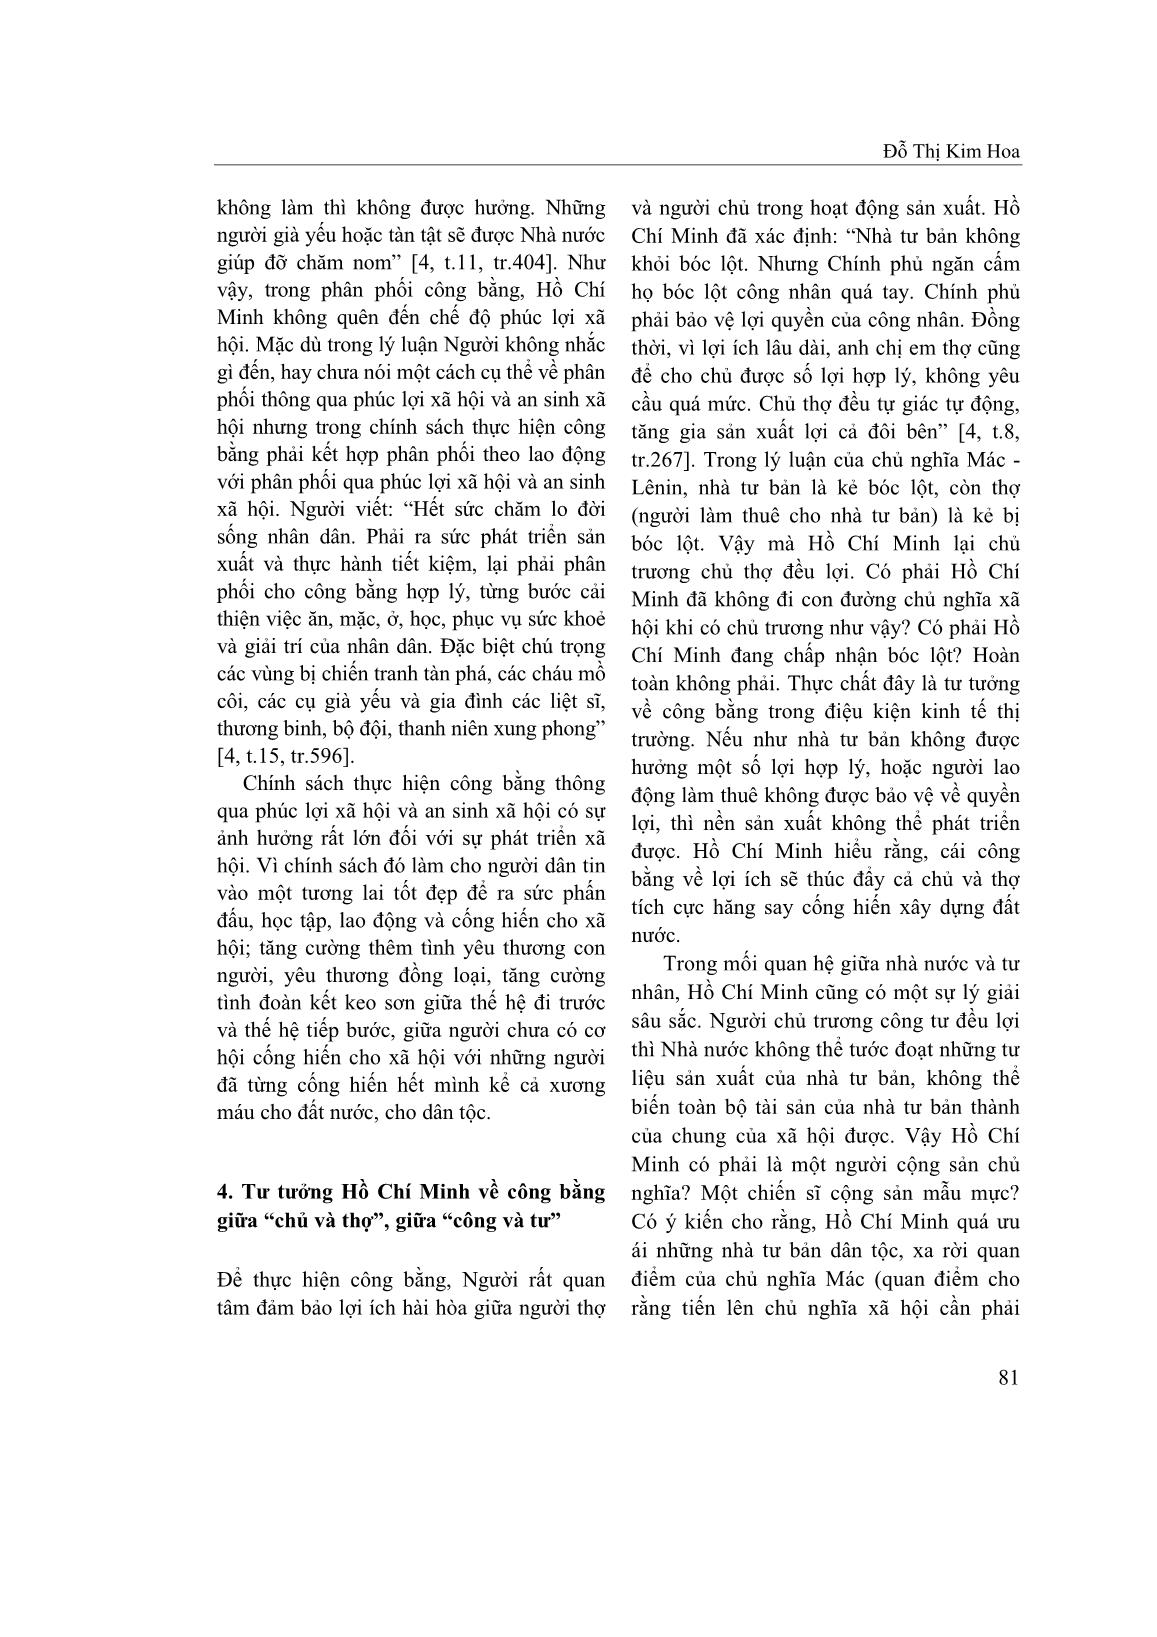 Tư tưởng Hồ Chí Minh về công bằng trang 4